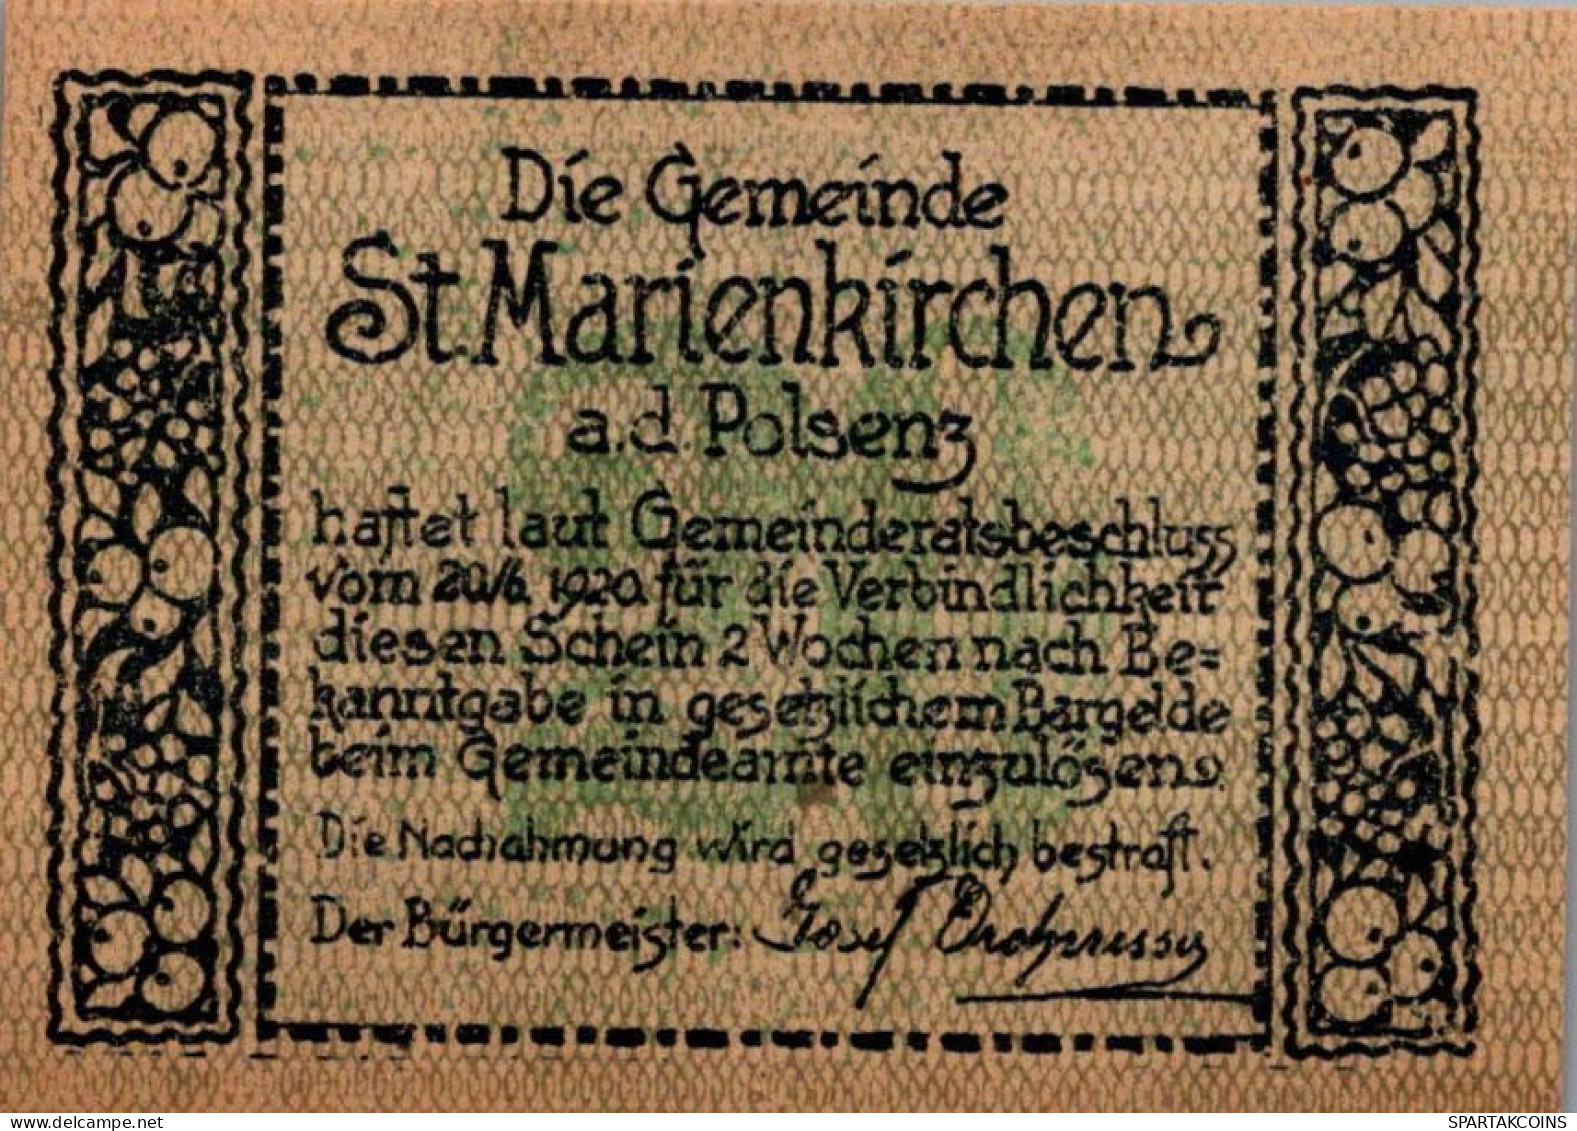 20 HELLER 1920 Stadt SANKT MARIENKIRCHEN AN DER POLSENZ Oberösterreich Österreich #PF382 - [11] Local Banknote Issues